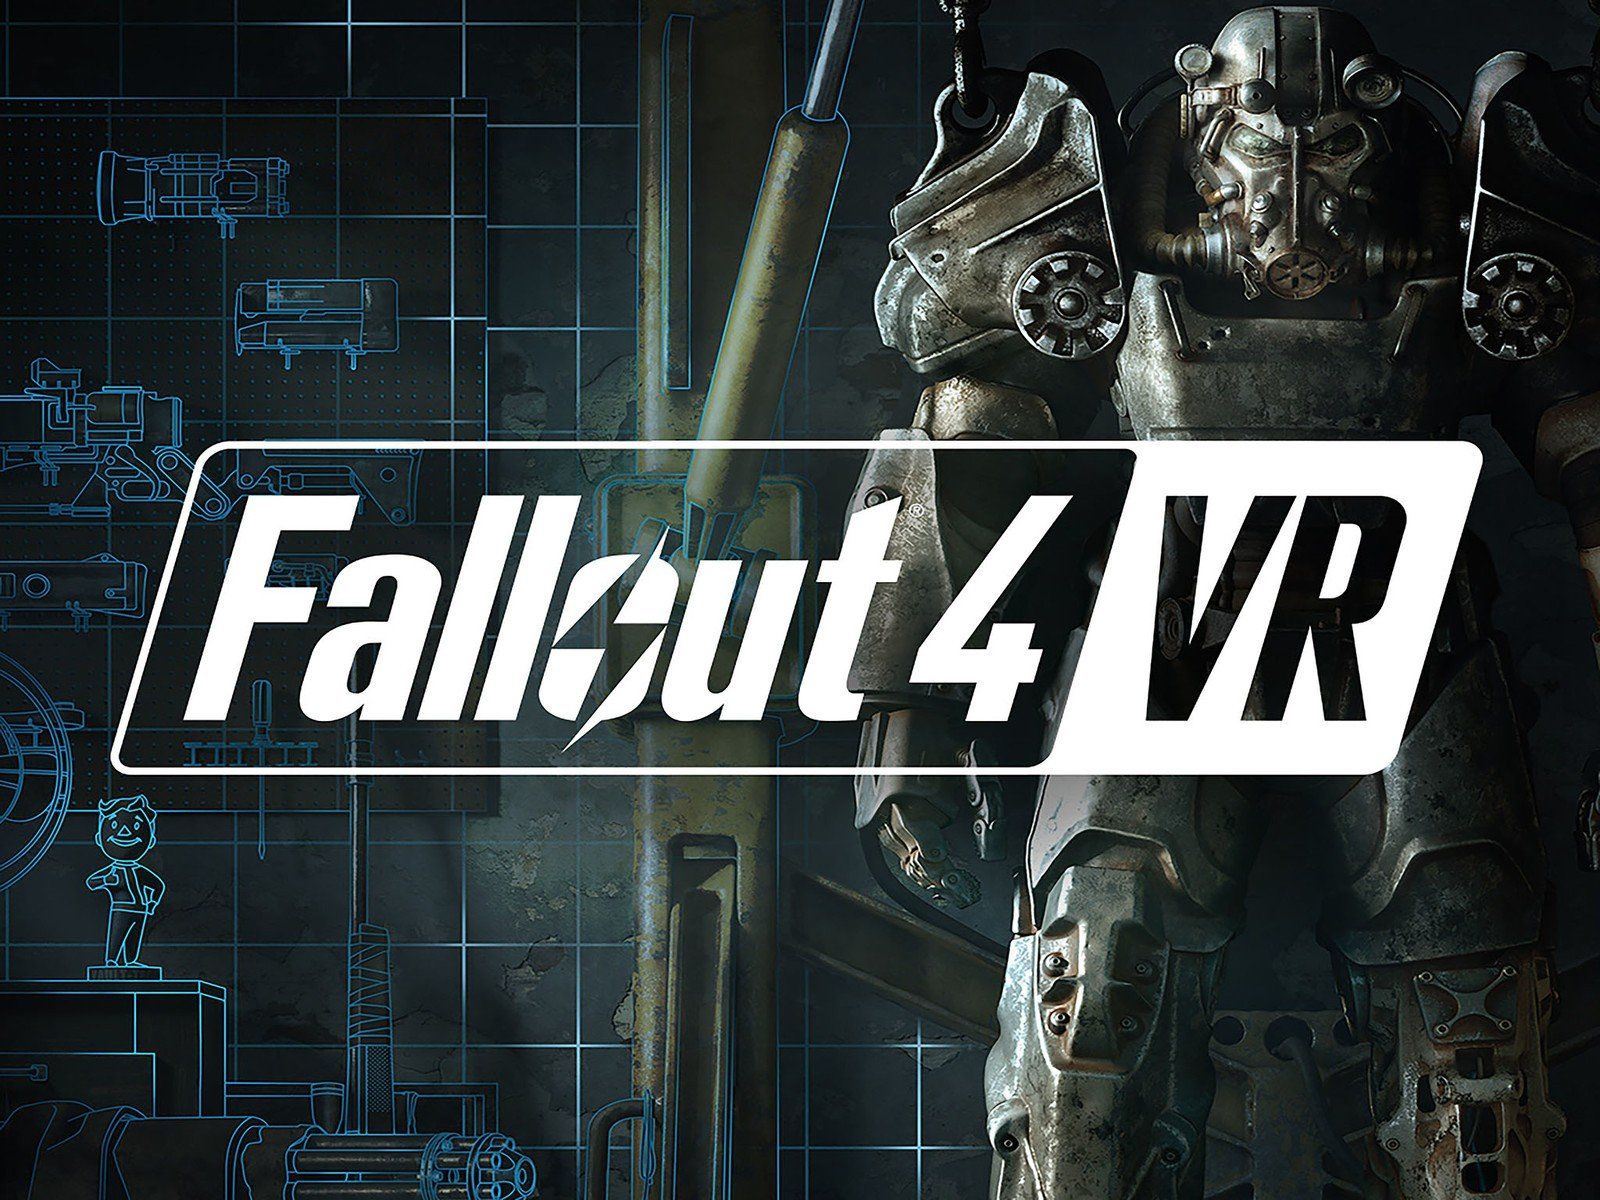 dorado postura semestre Fallout 4 VR Review - VR Geeks